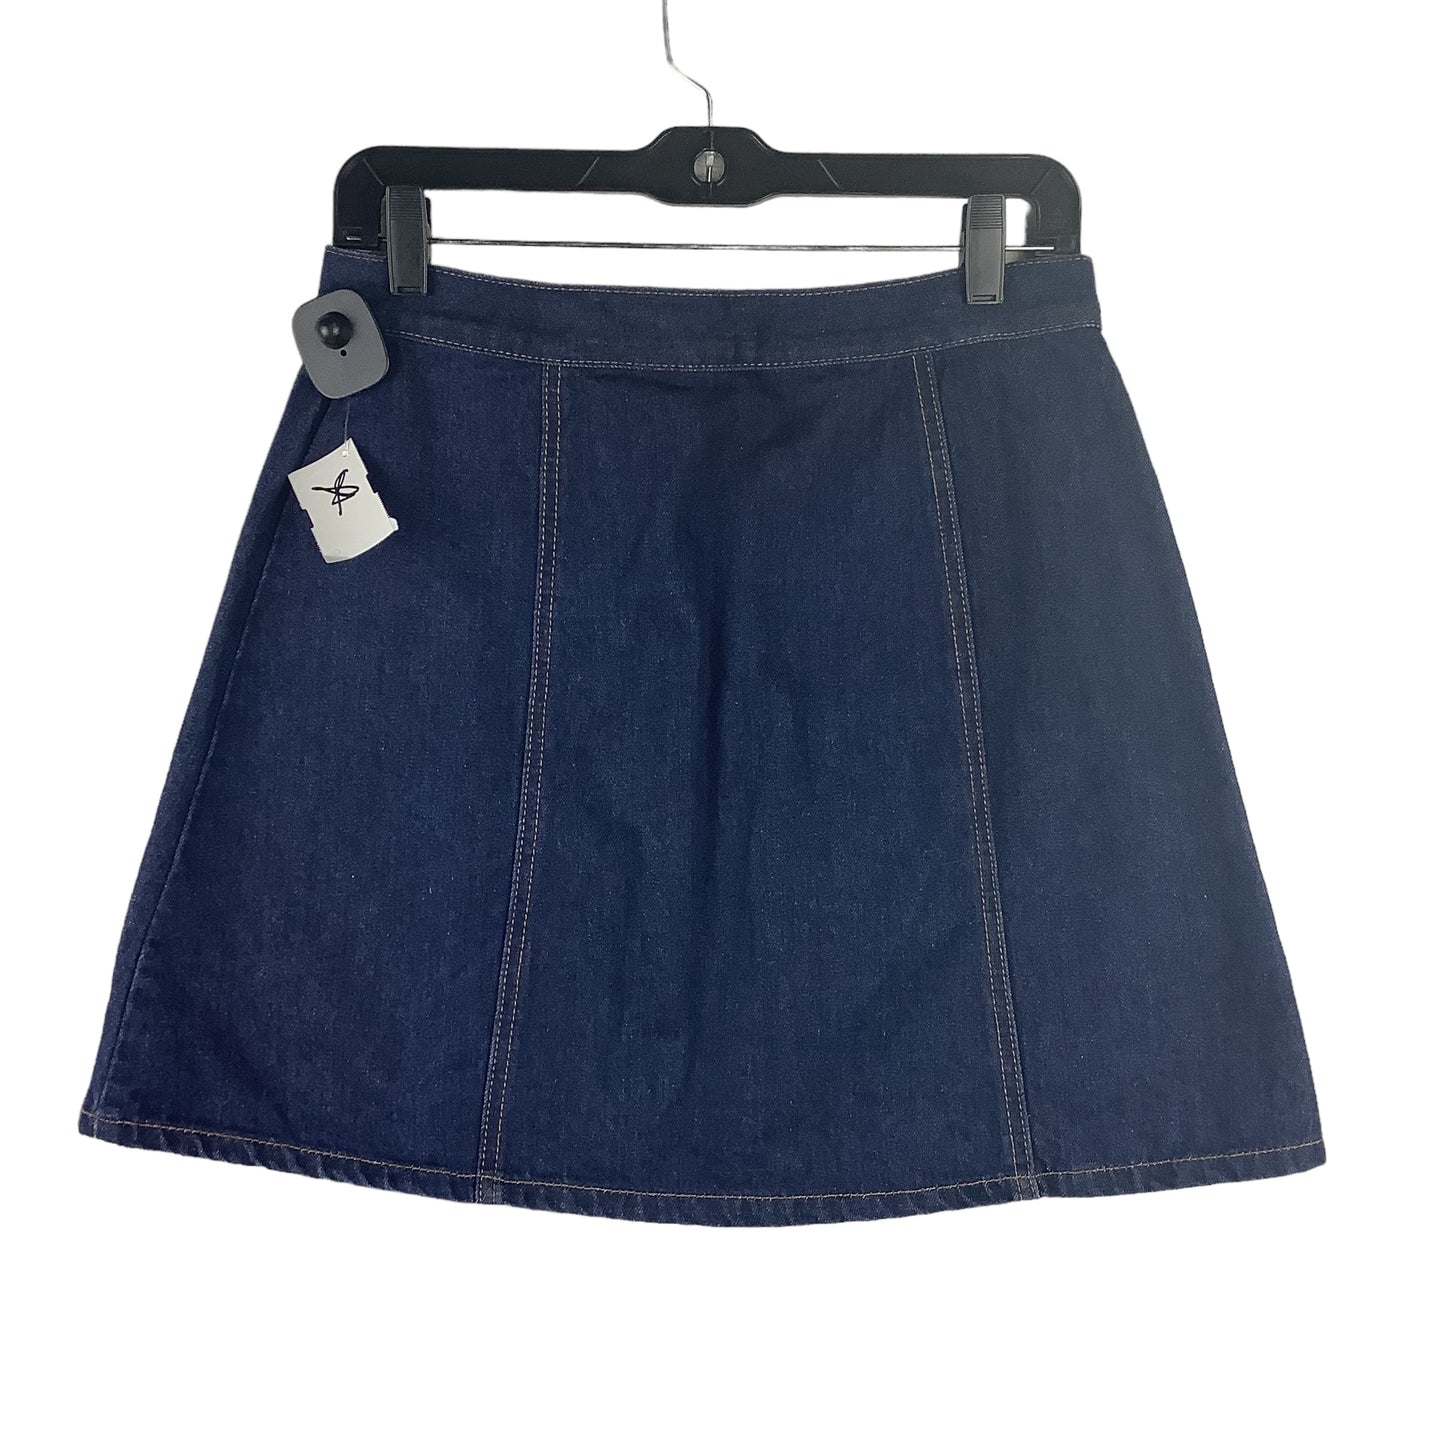 Skirt Mini & Short By Bdg  Size: M